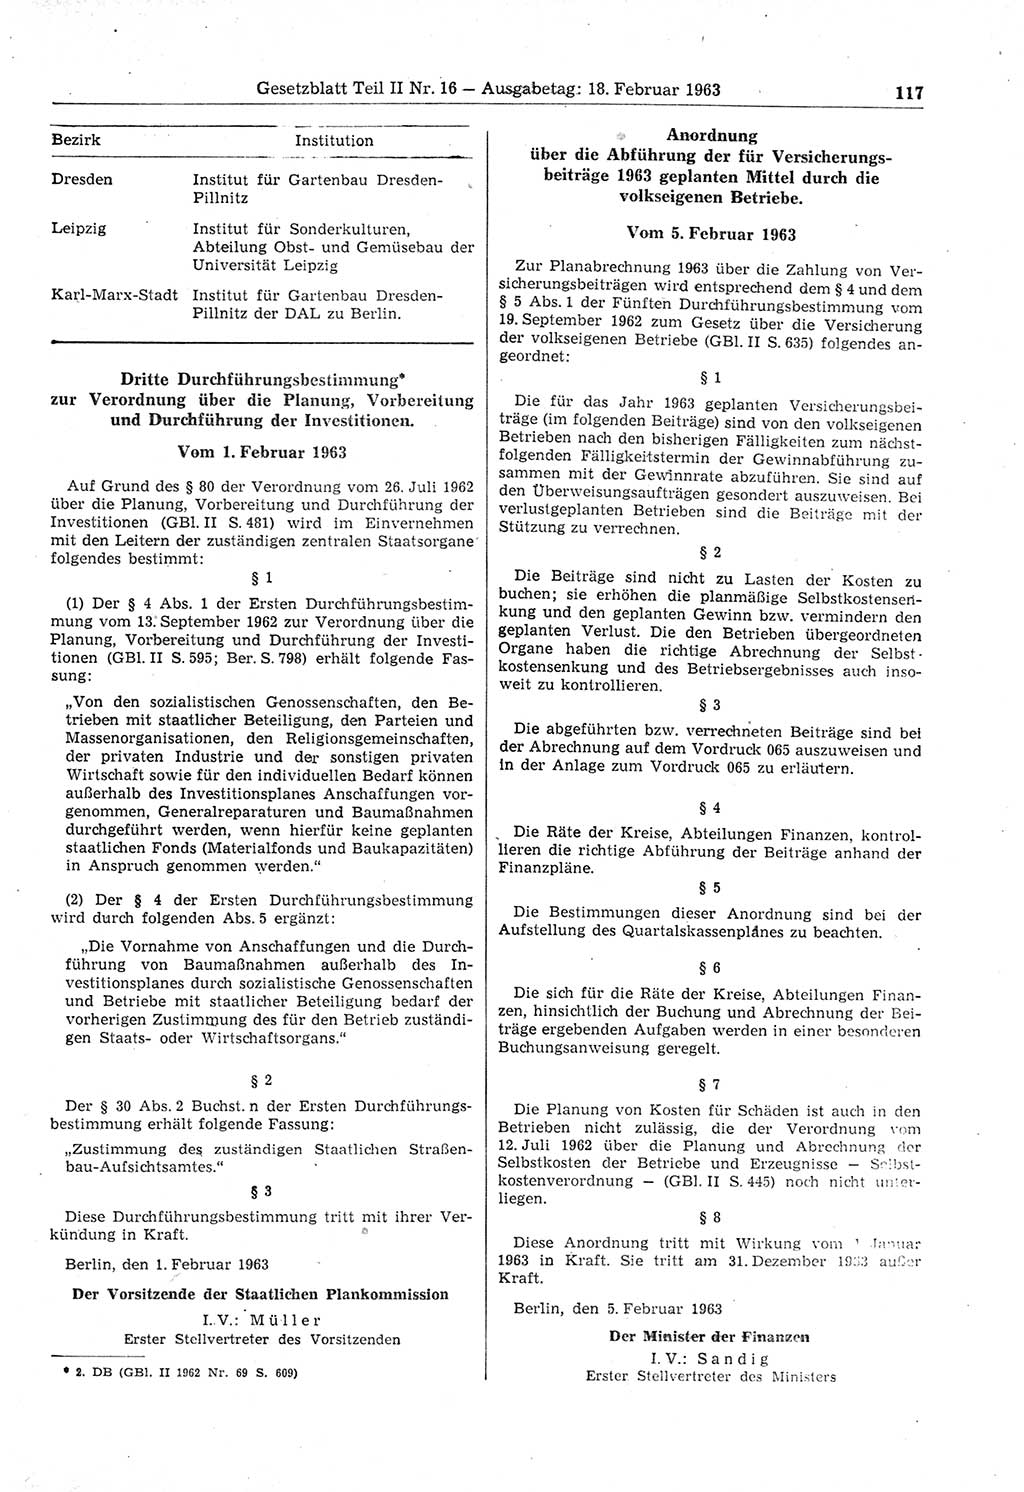 Gesetzblatt (GBl.) der Deutschen Demokratischen Republik (DDR) Teil ⅠⅠ 1963, Seite 117 (GBl. DDR ⅠⅠ 1963, S. 117)